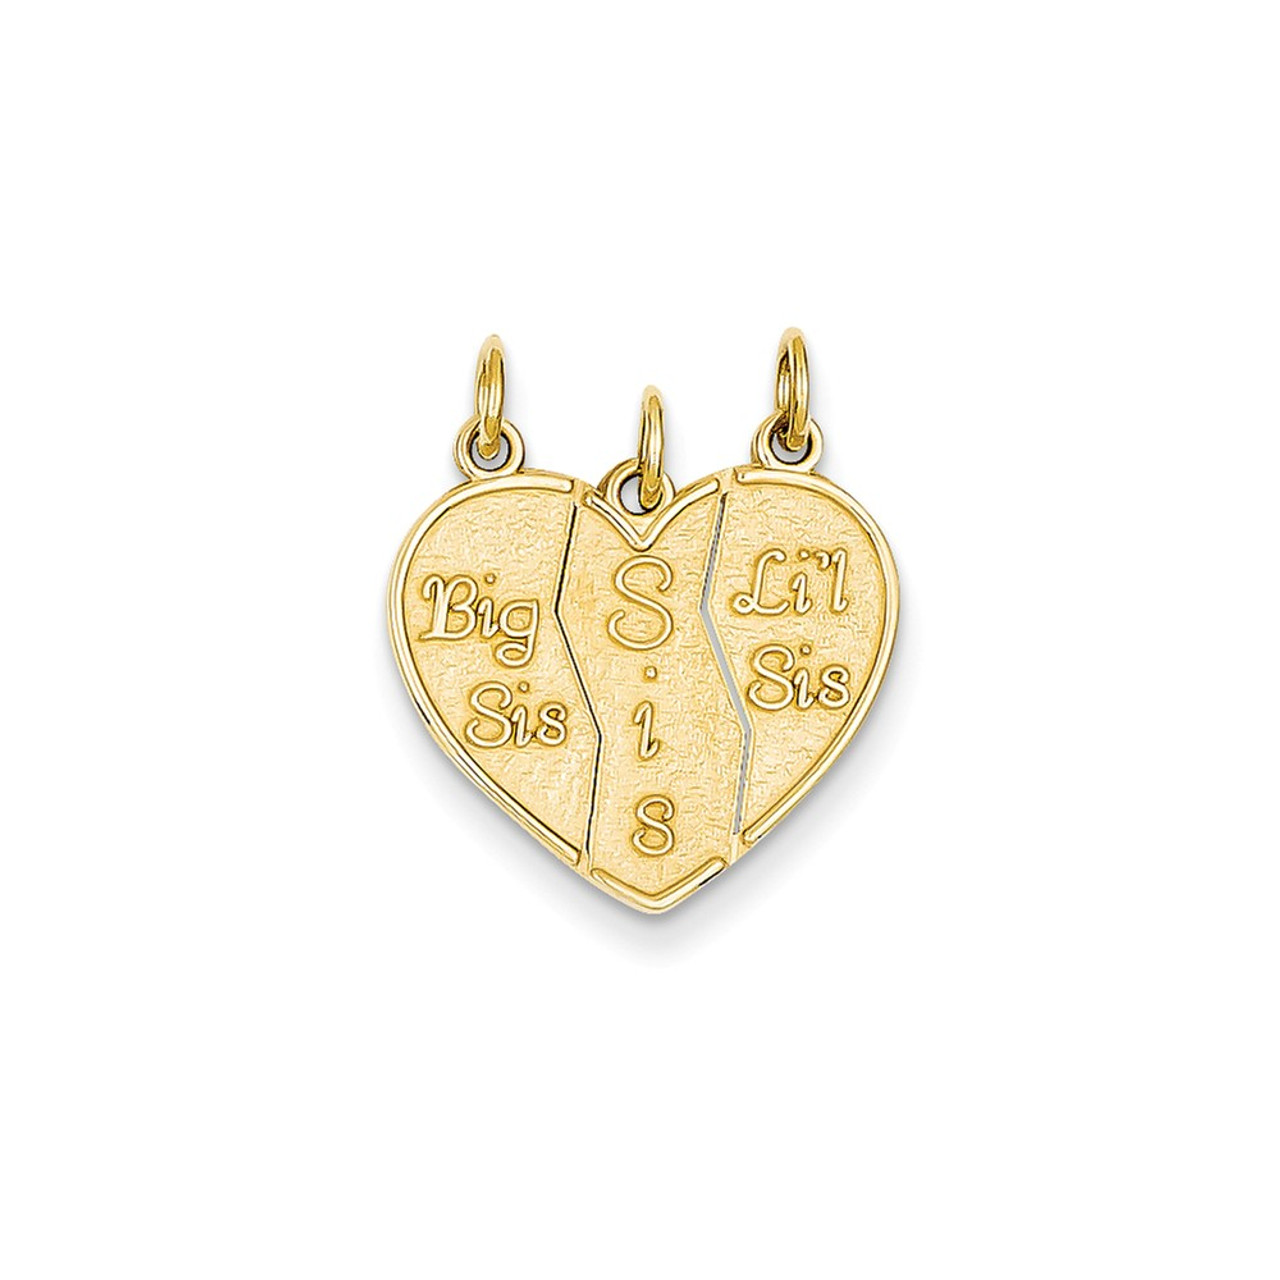 Big Sis & Lil Sis Heart Charms 10K Yellow Gold